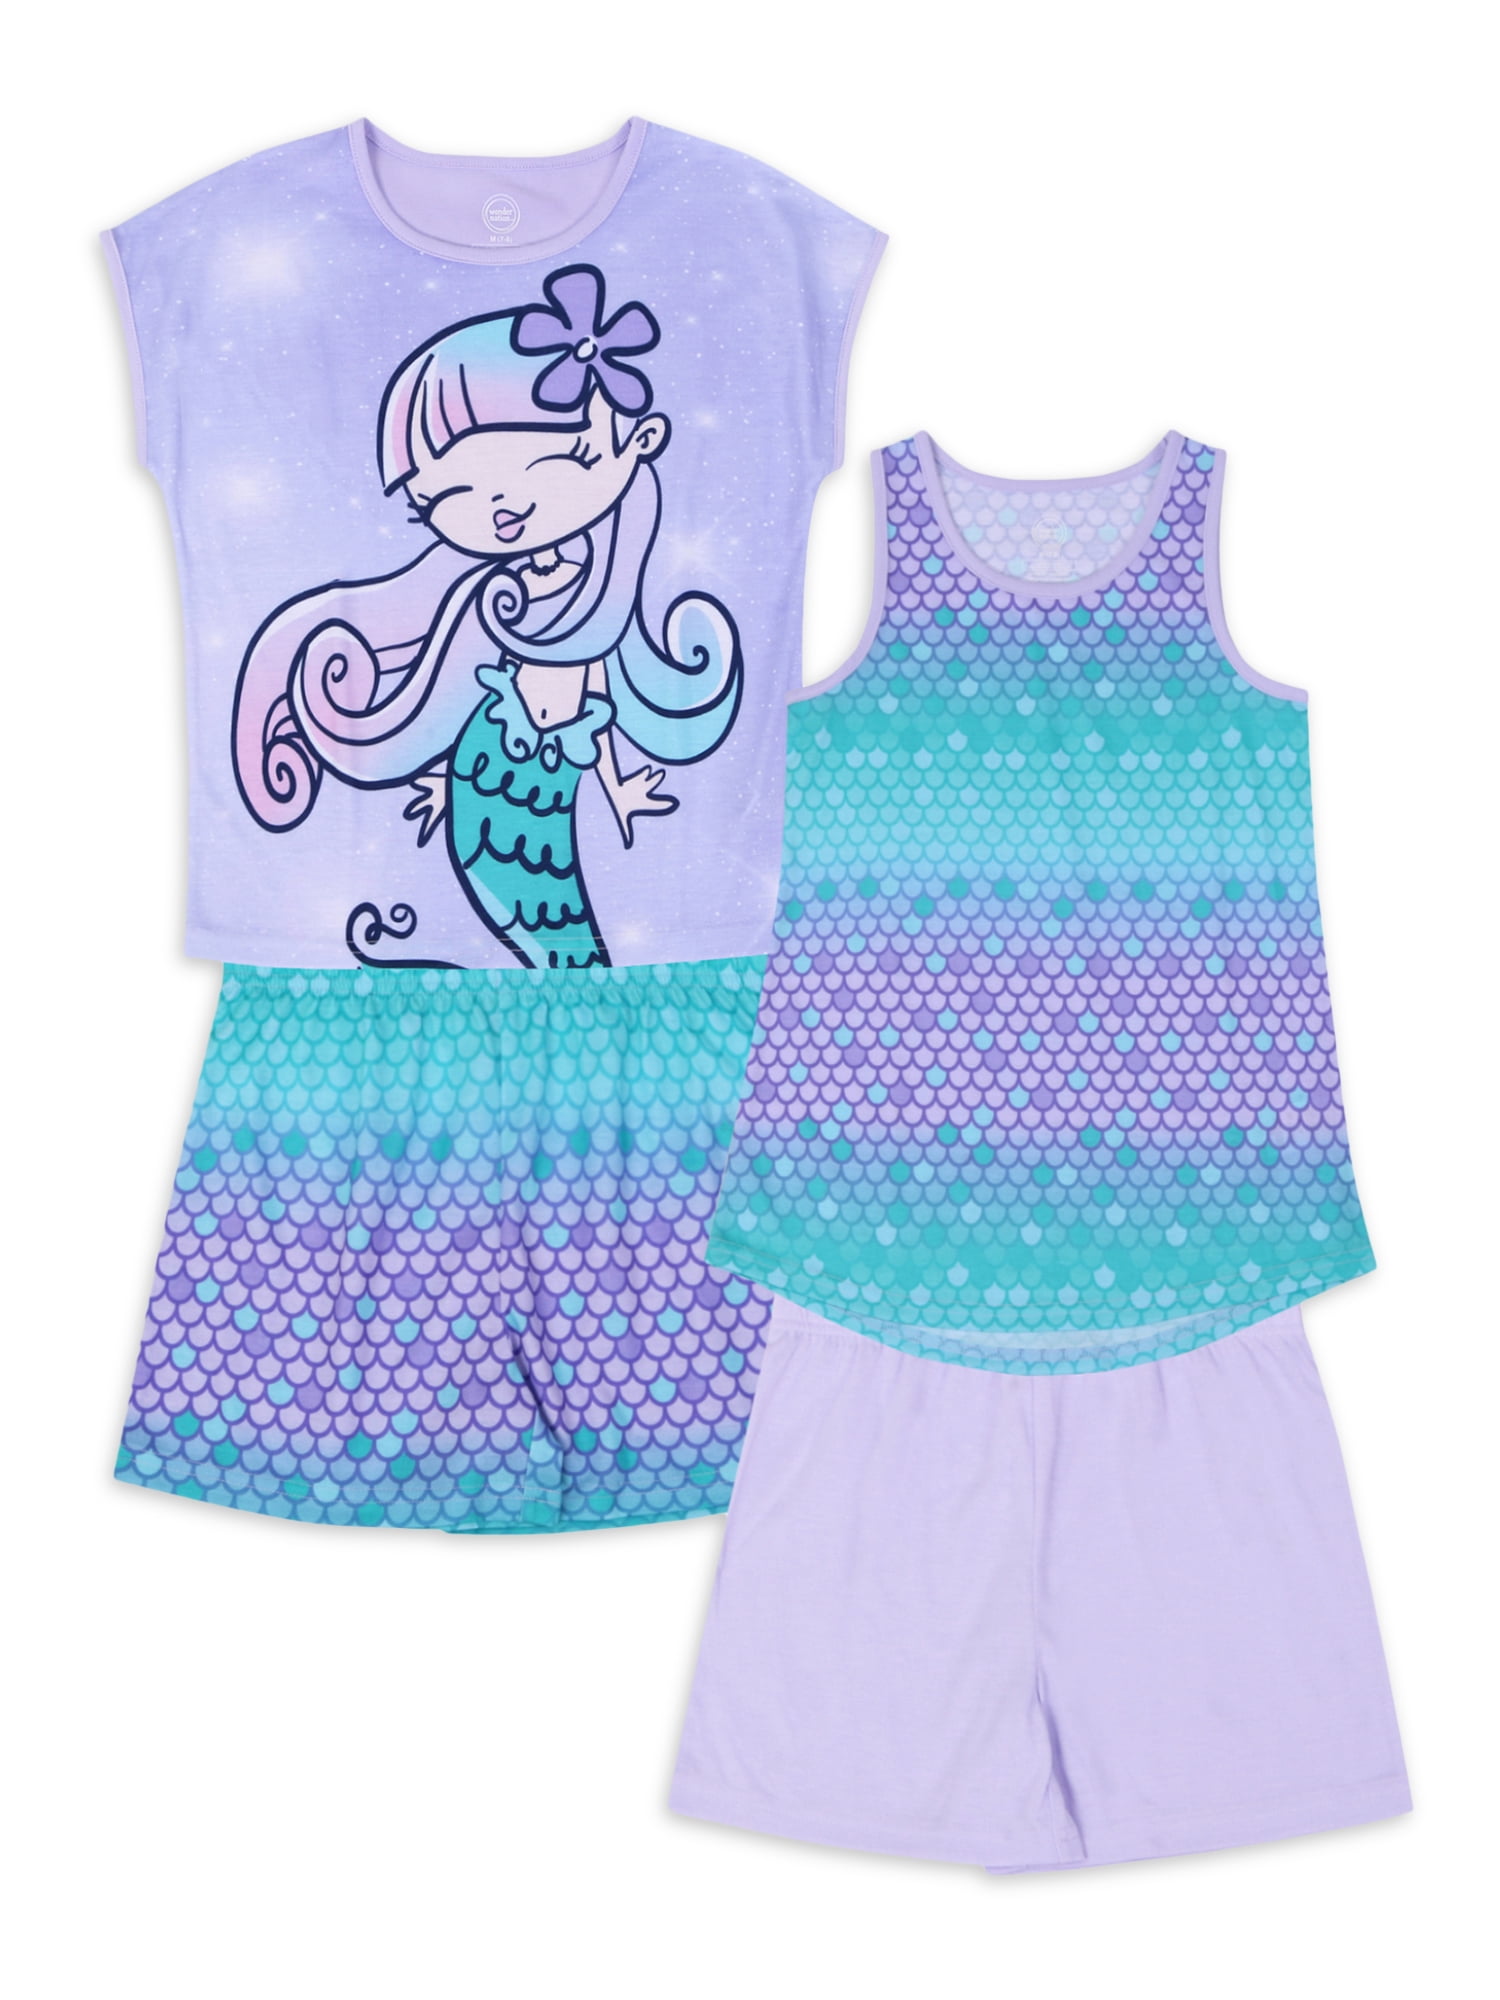 Lilo & Stitch Girl Nighty Dress Polyester Sleepwear Size 4-8 age 2-6 